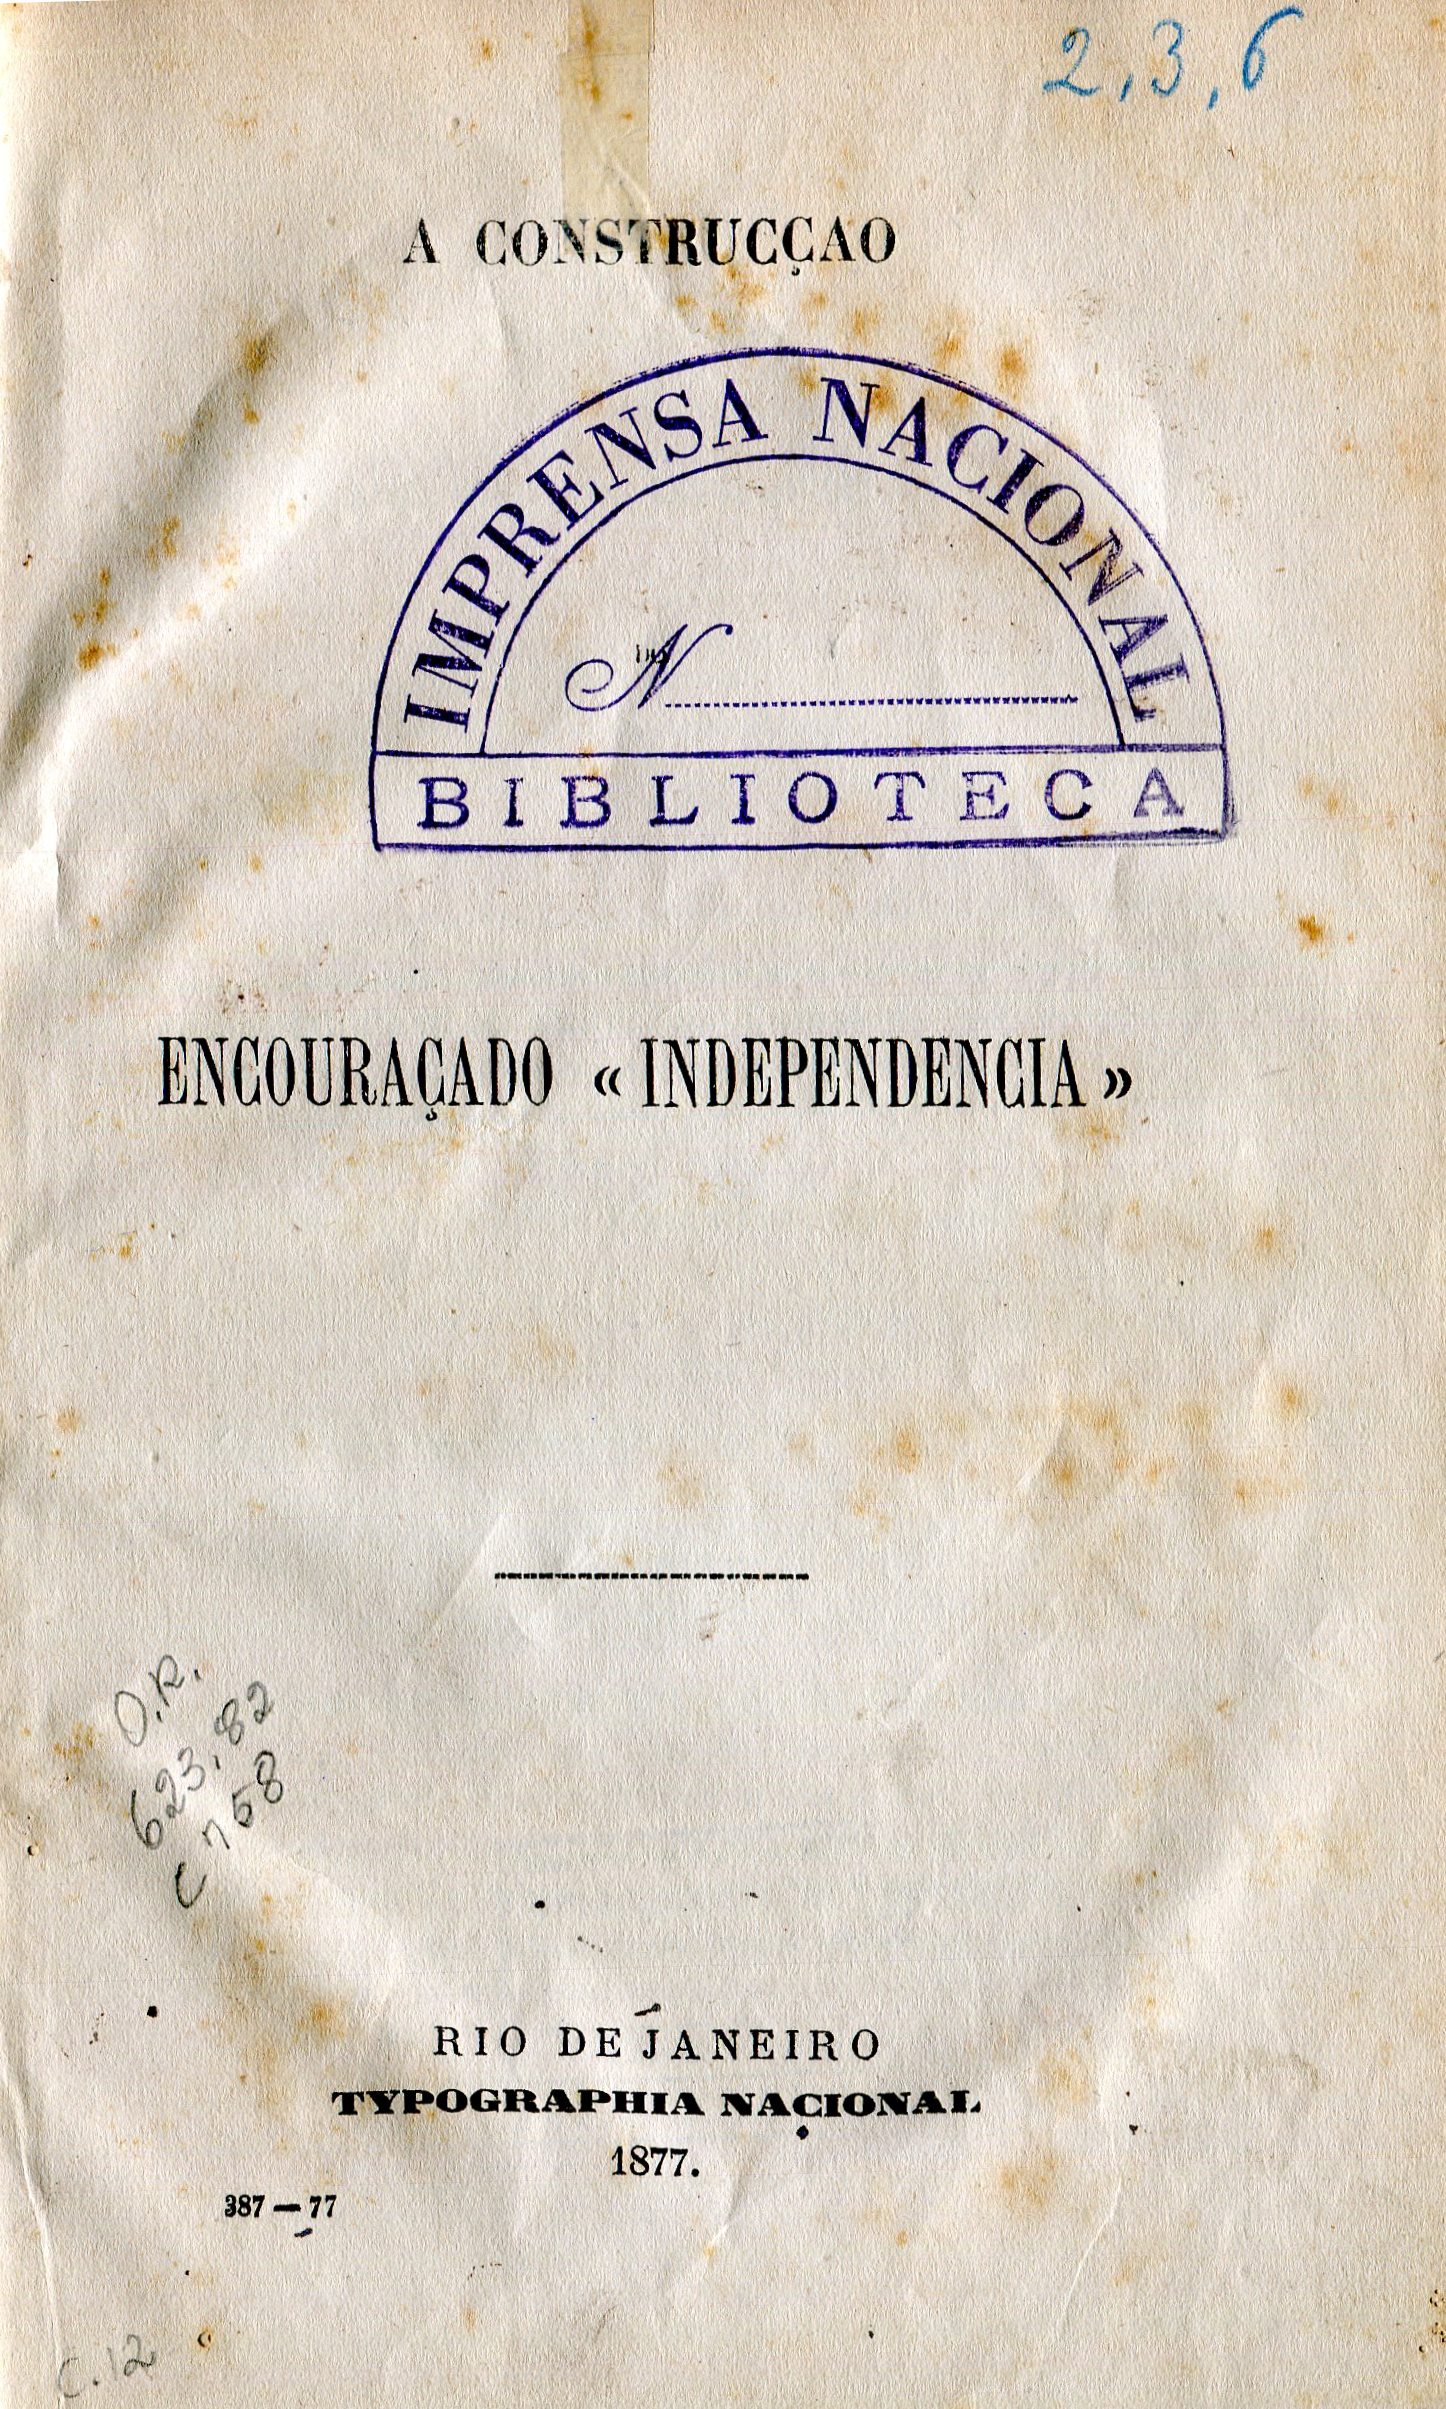 Capa do Livro A Construção do Encouraçado Independência - (623.82)